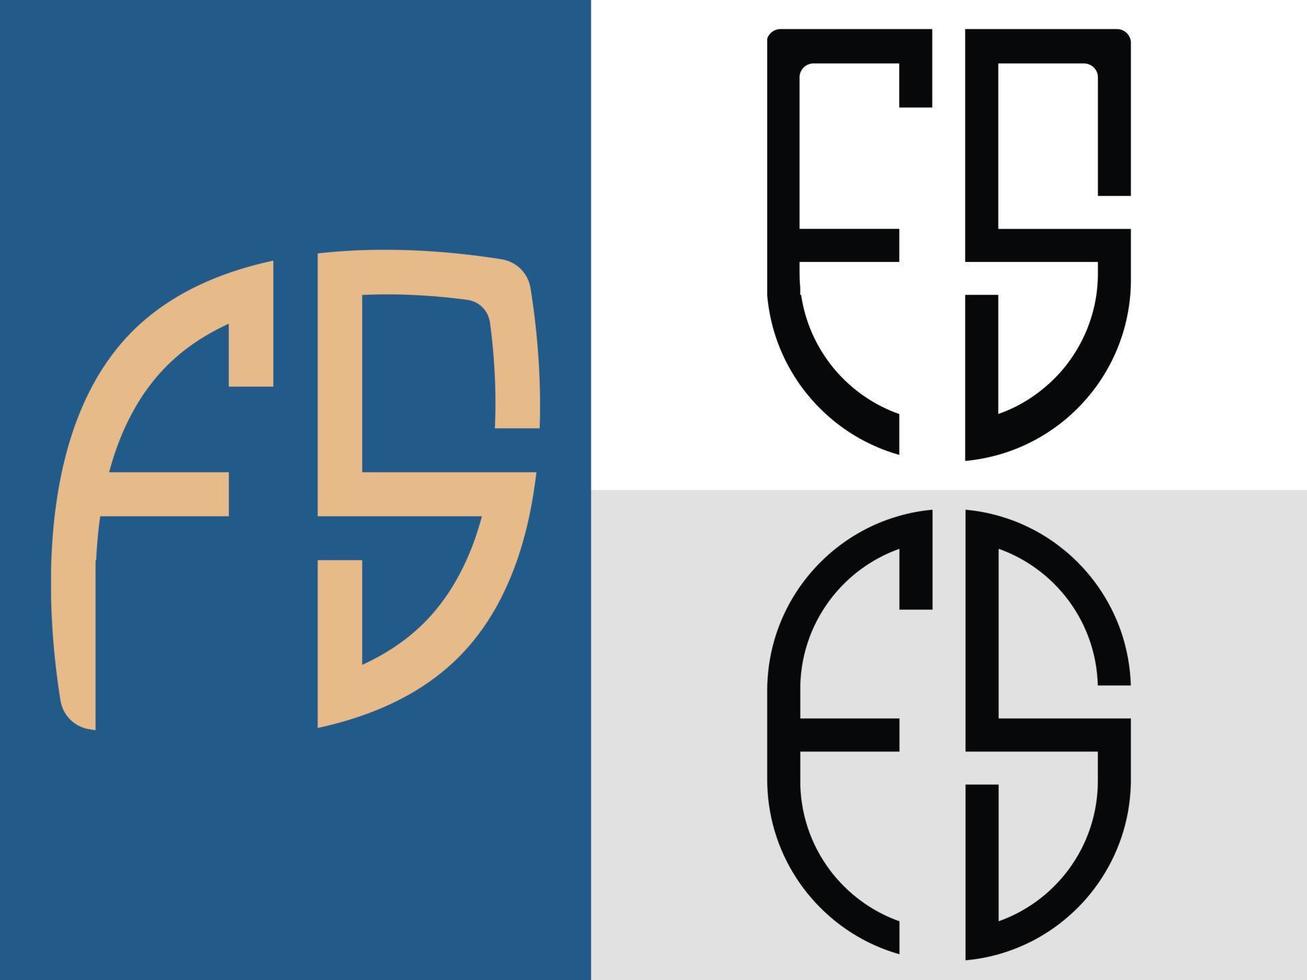 kreative anfangsbuchstaben fs logo designs paket vektor